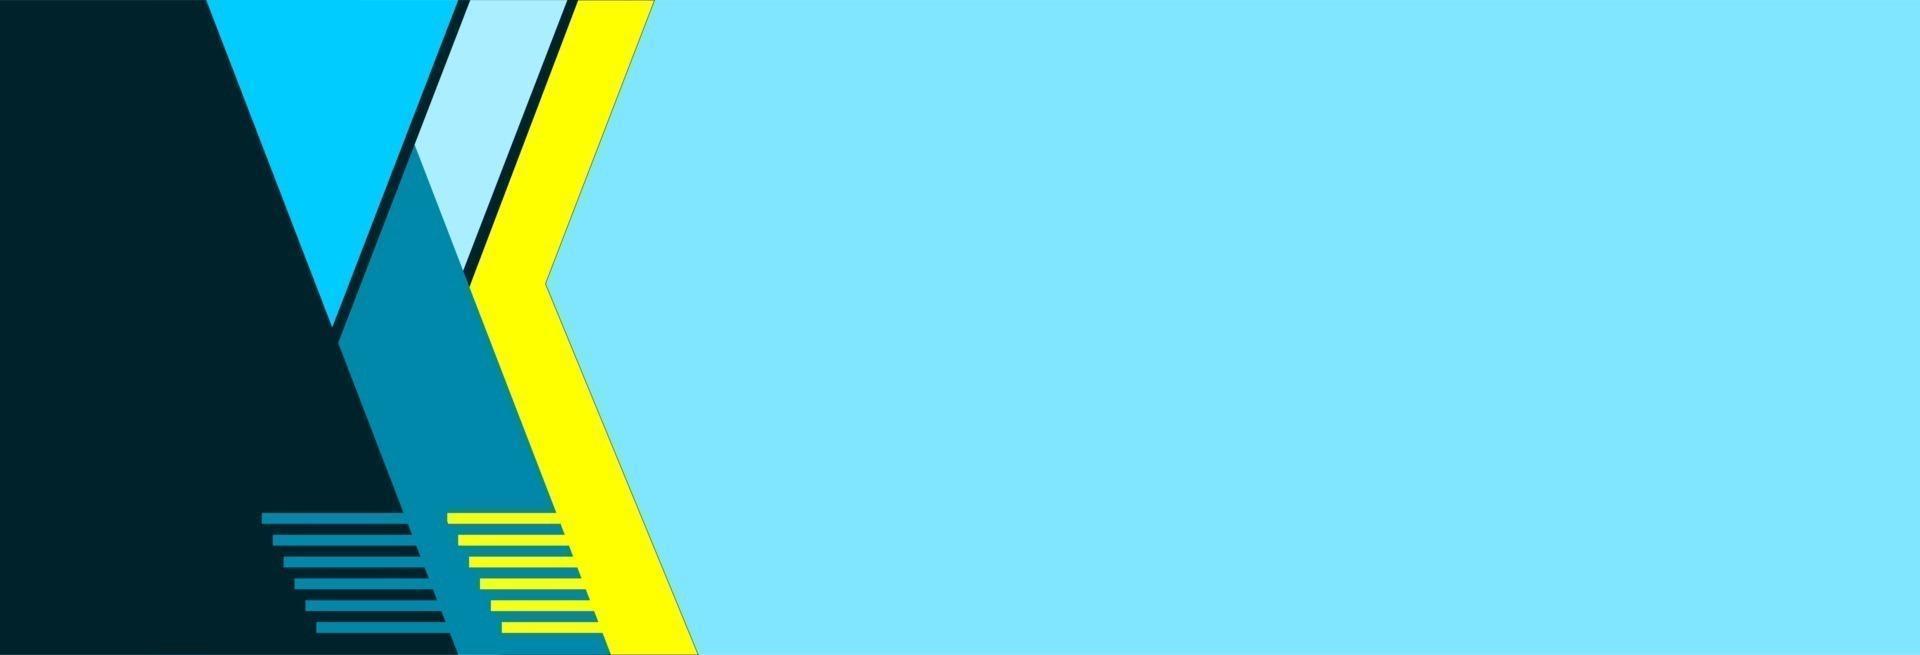 blå banderoll med gul remsa vektor